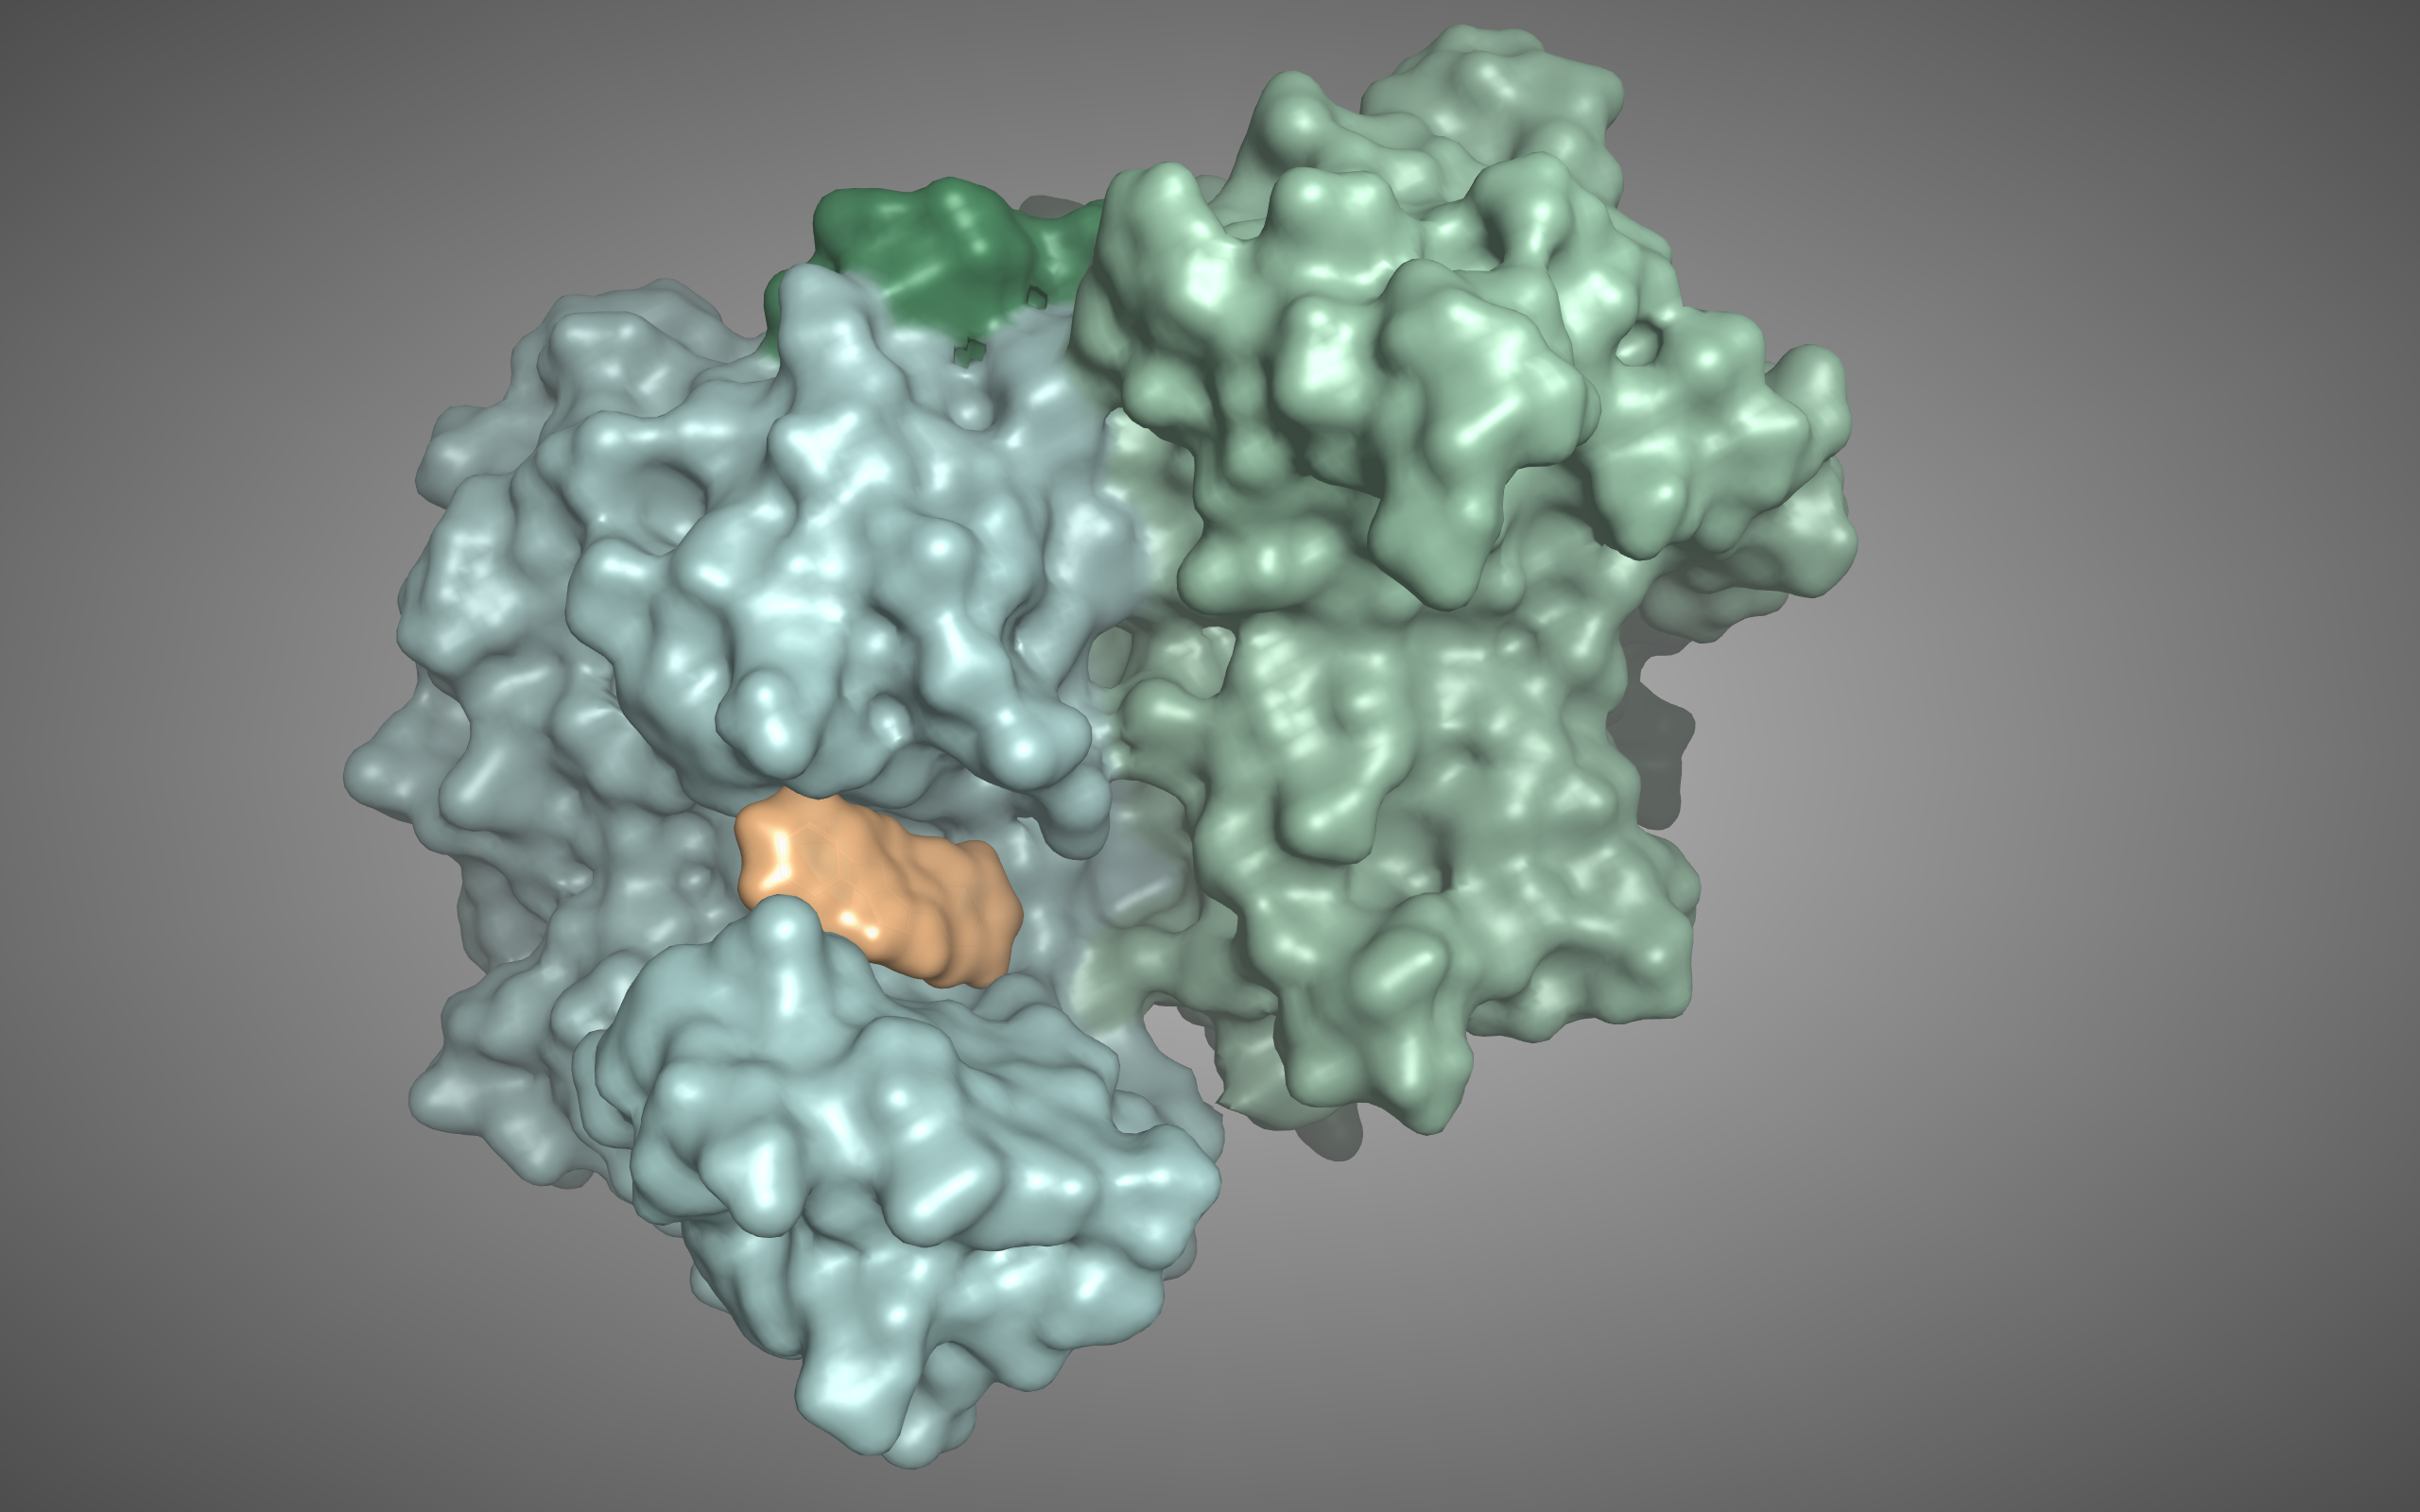 Röntgenkristallstruktur von Meprin β (blau-grün) mit dem Modell eines am Fraunhofer IZI entwickelten Inhibitors im aktiven Zentrum (orange)